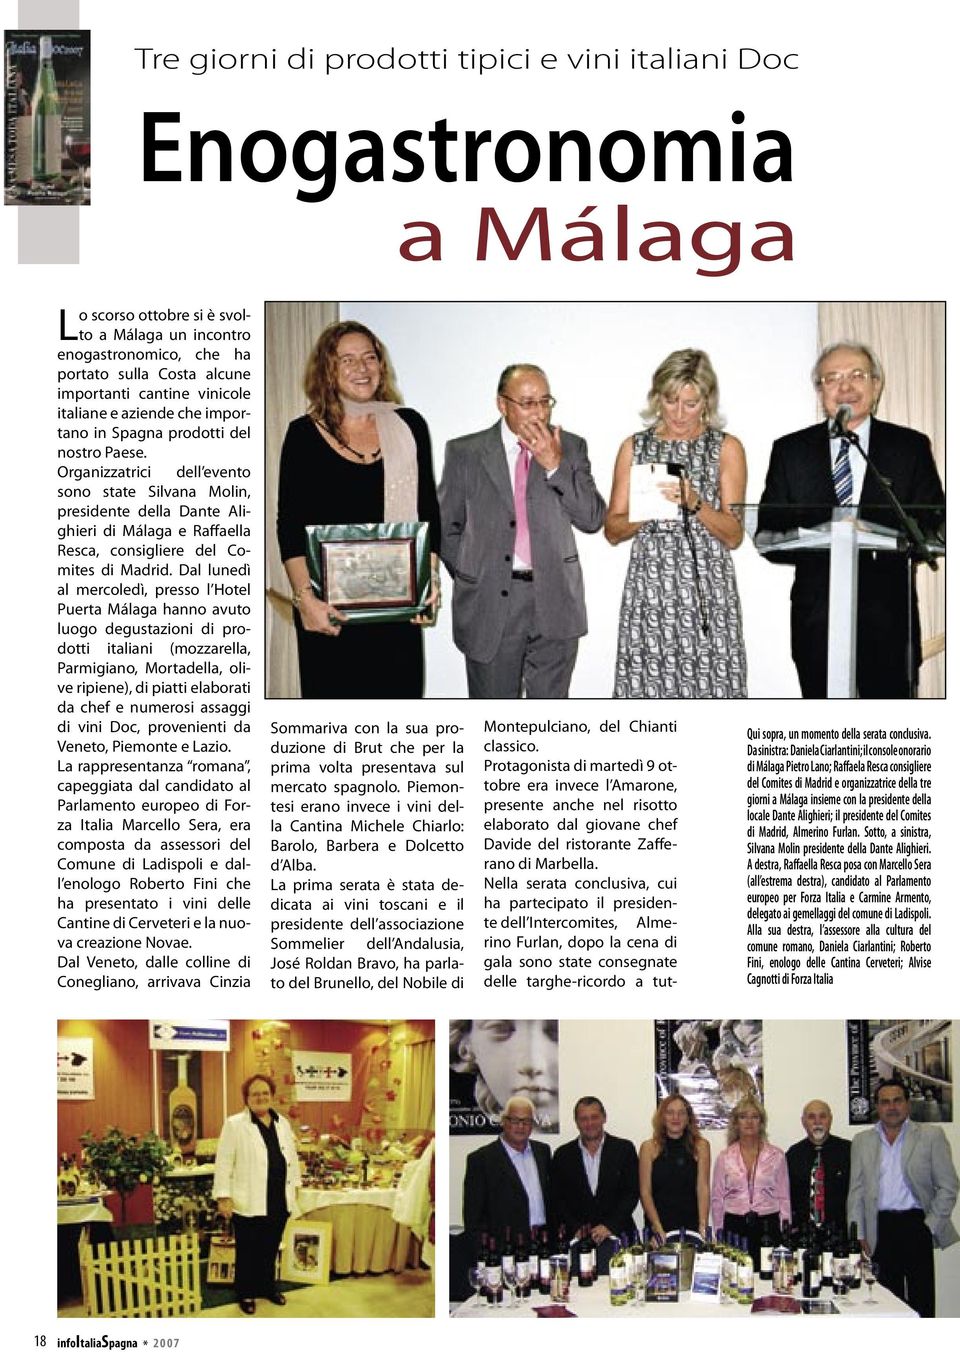 Organizzatrici dell evento sono state Silvana Molin, presidente della Dante Alighieri di Málaga e Raffaella Resca, consigliere del Comites di Madrid.